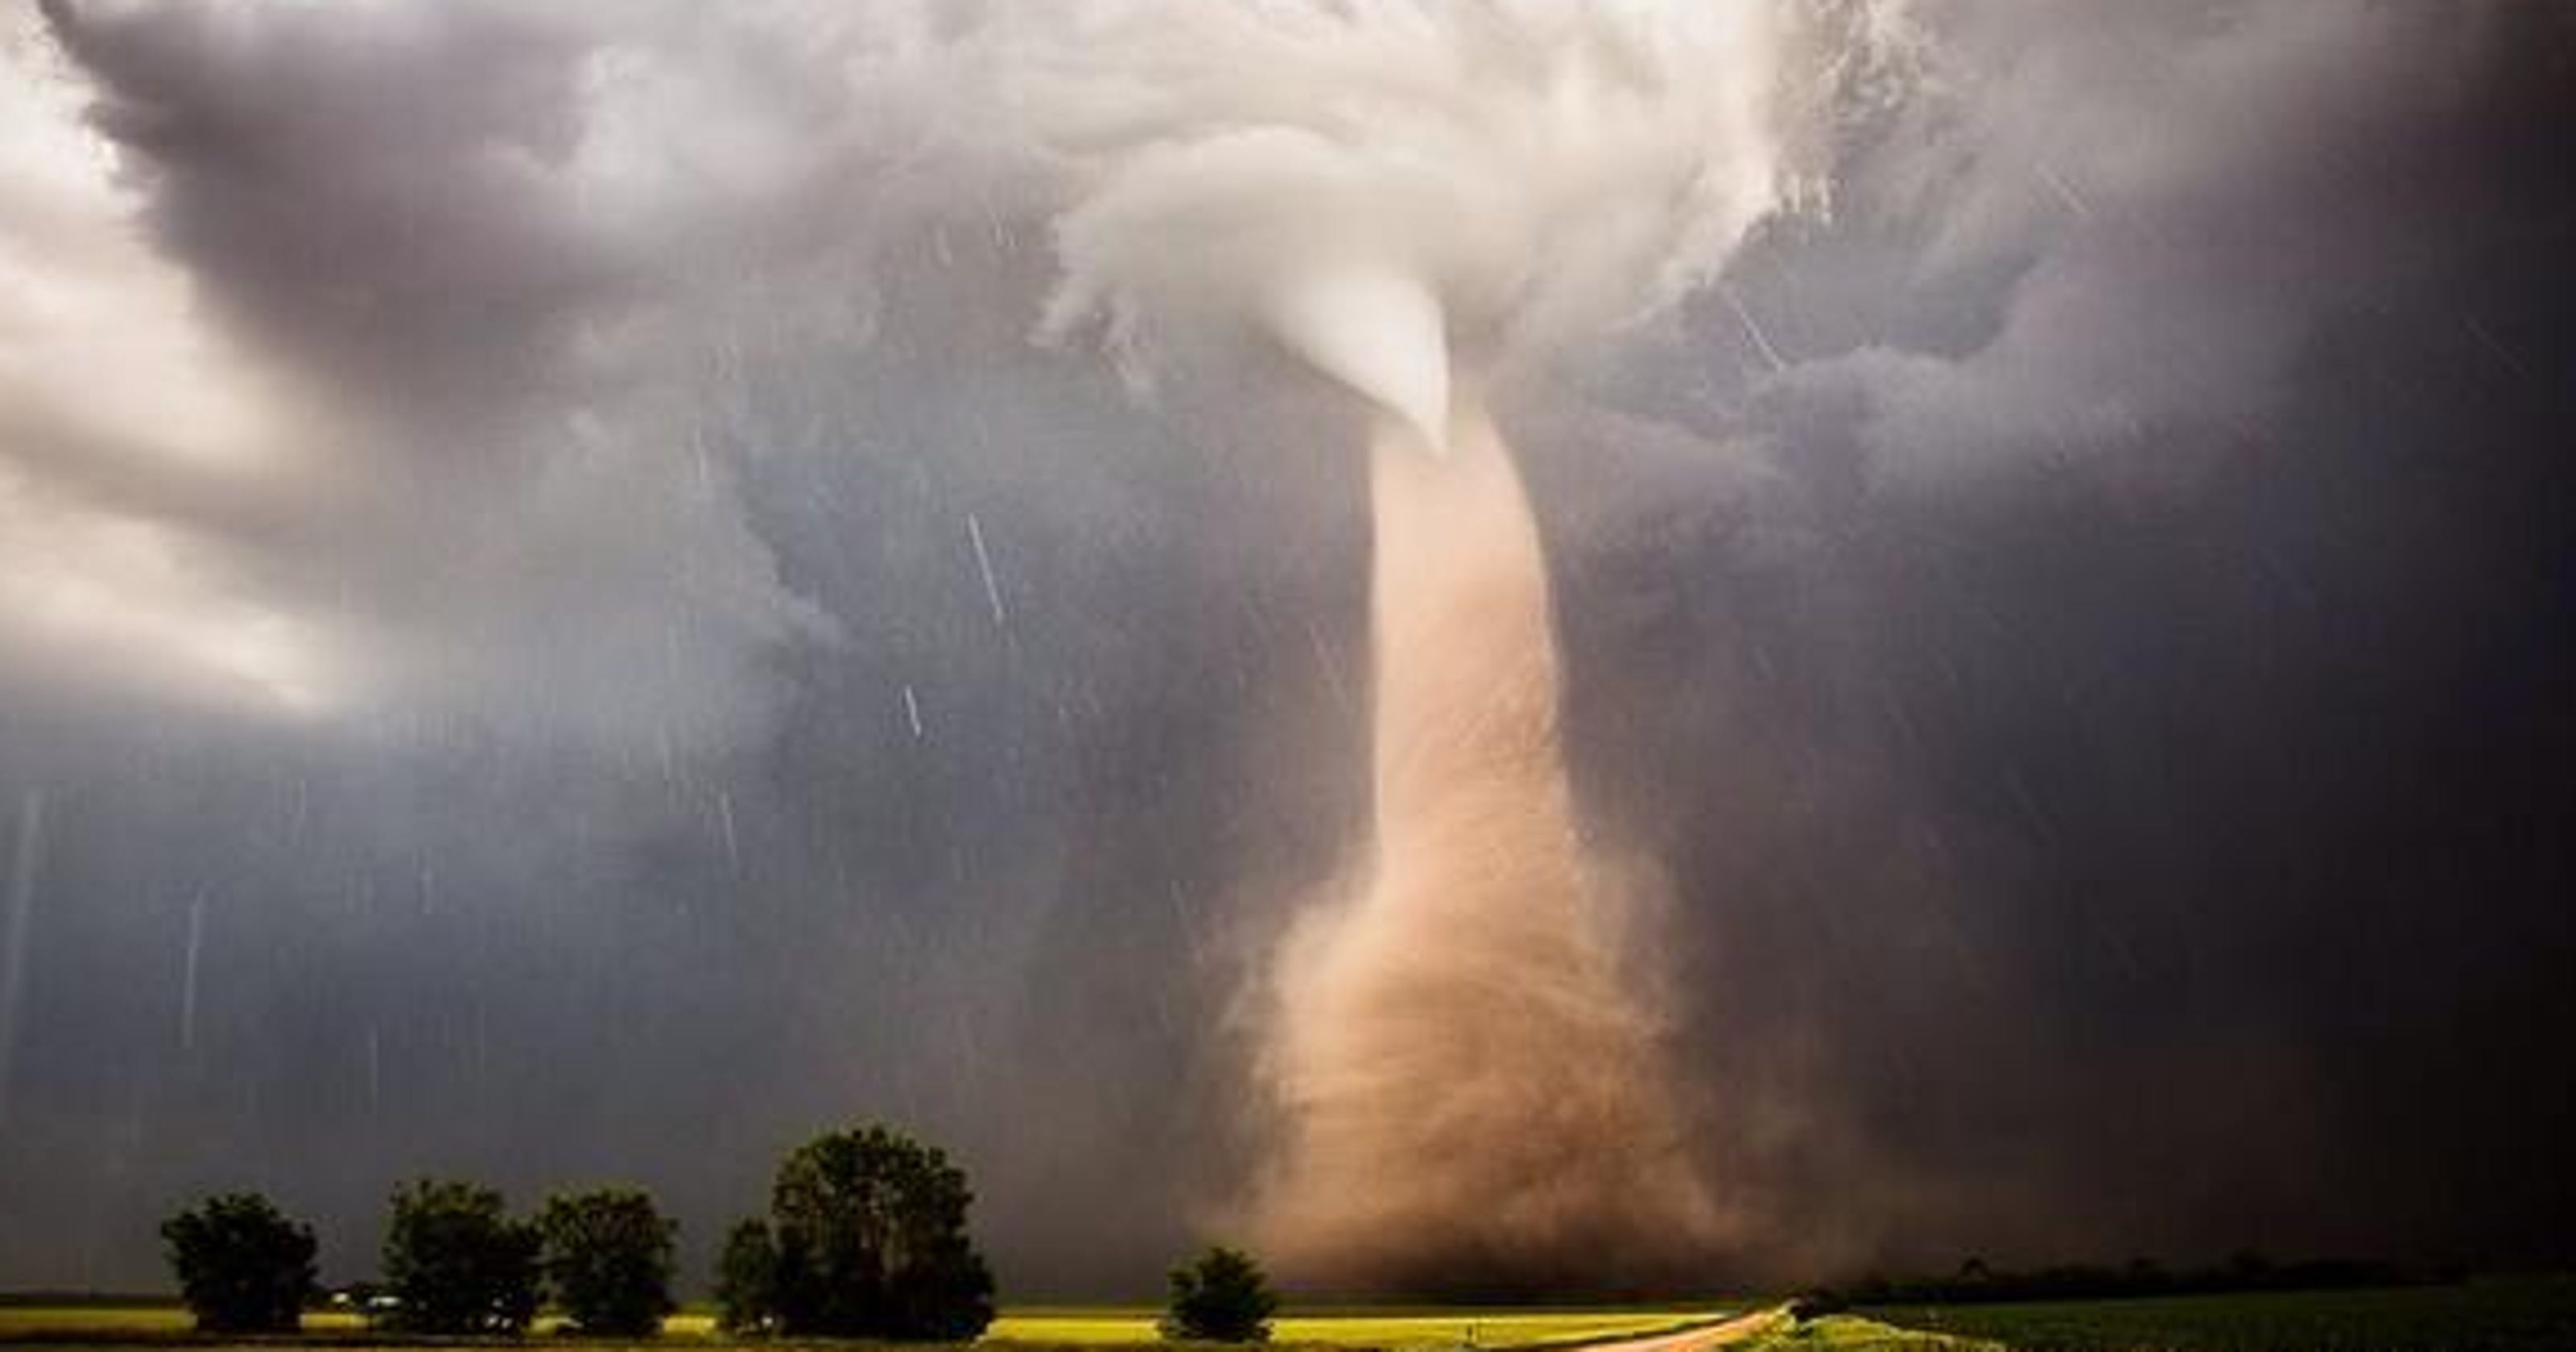 Scary tornado roars in Nebraska